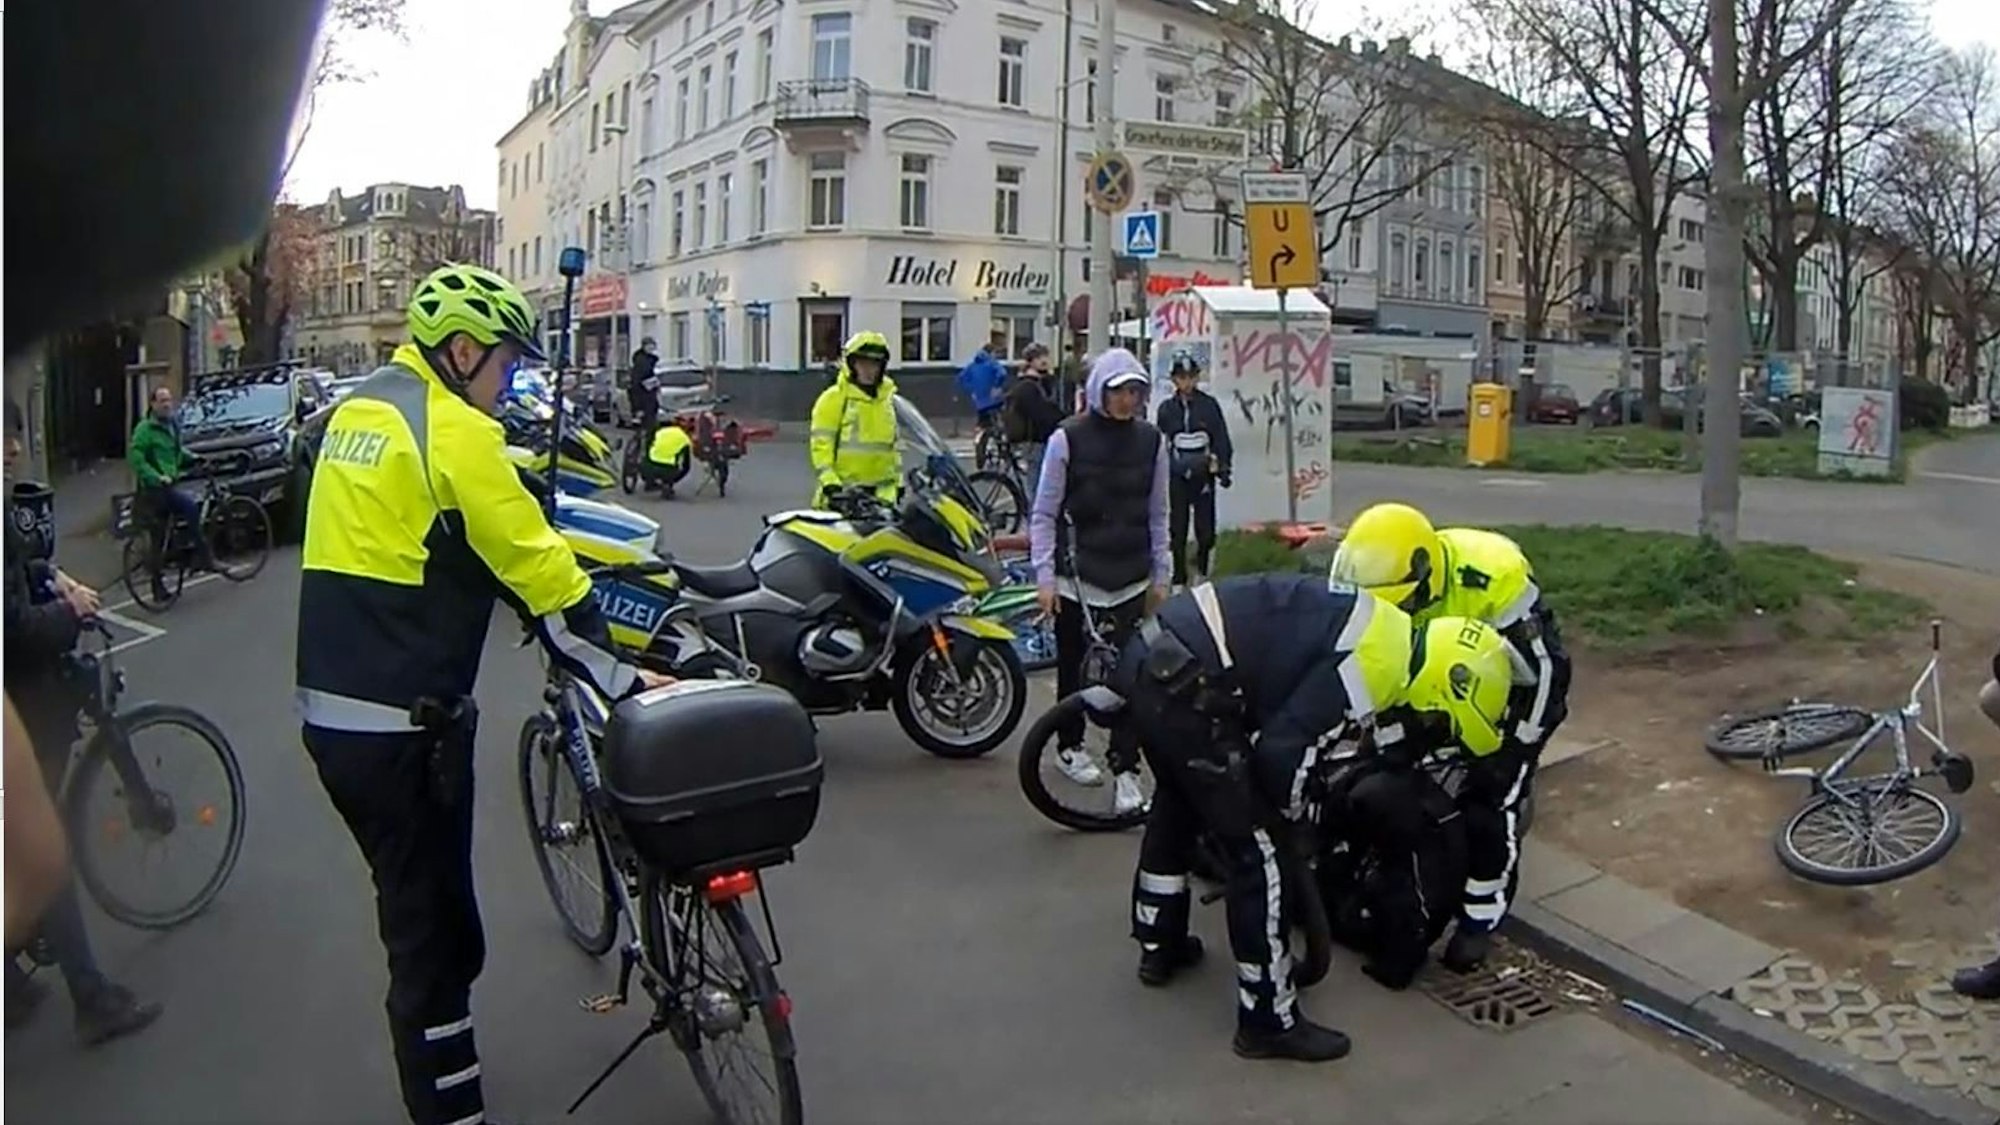 Screenshot aus einem Twitter-Video. Polizei-Einsatz am Rand der Fahrrad-Demonstration Critical Mass in Bonn. Mehrere Polizisten stehen um das Fahrrad eines Jungen. Der Junge liegt am Boden.